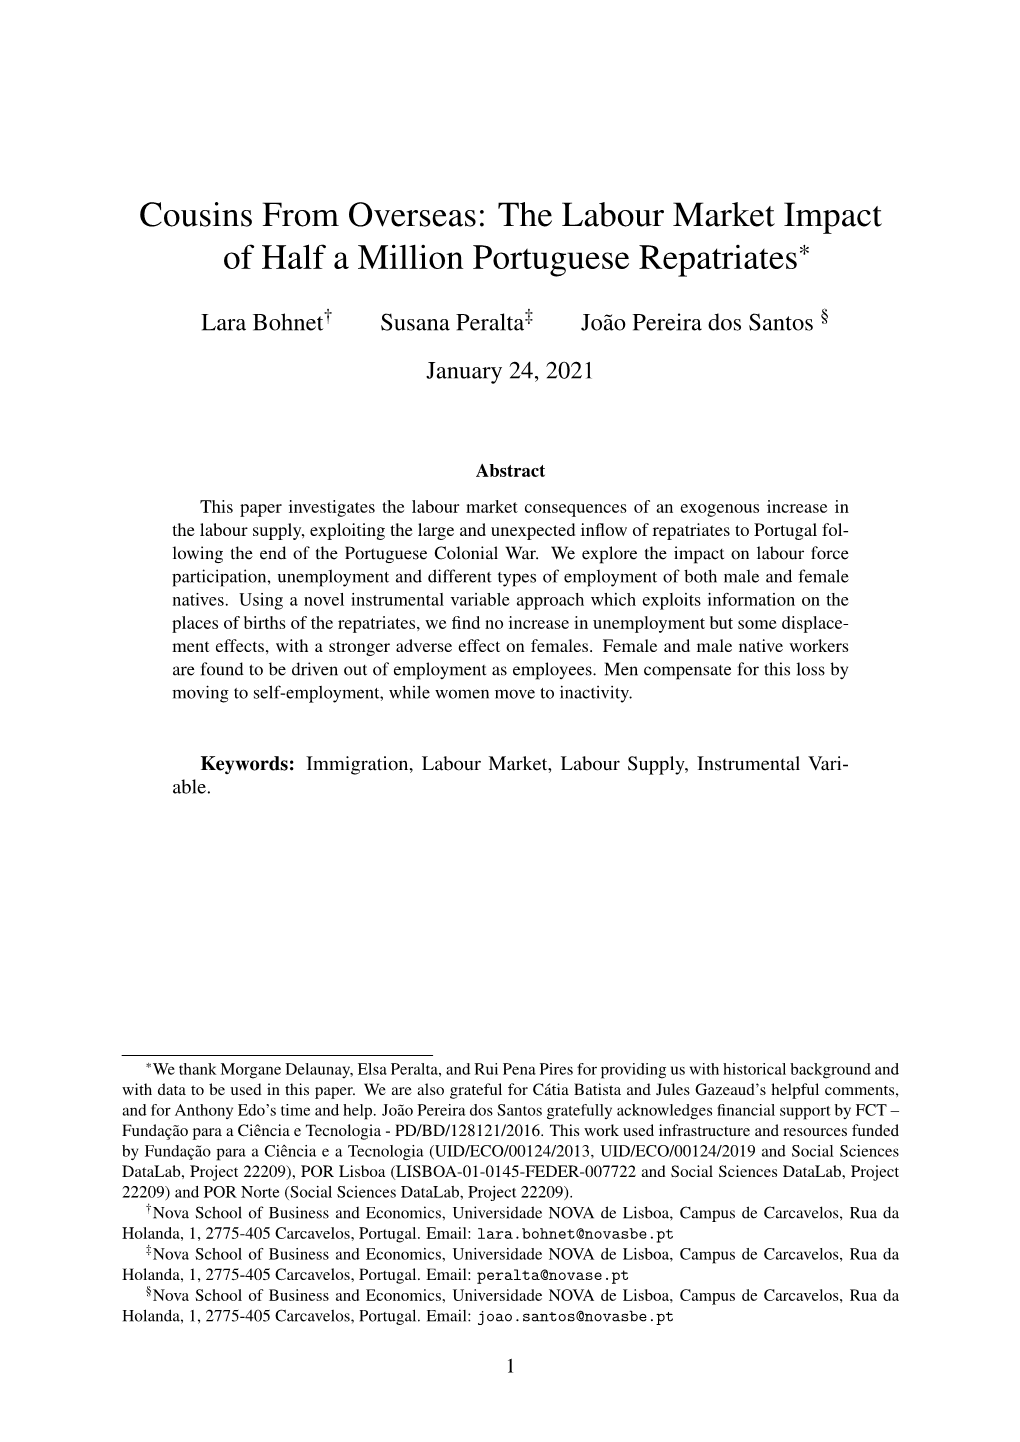 The Labour Market Impact of Half a Million Portuguese Repatriates*